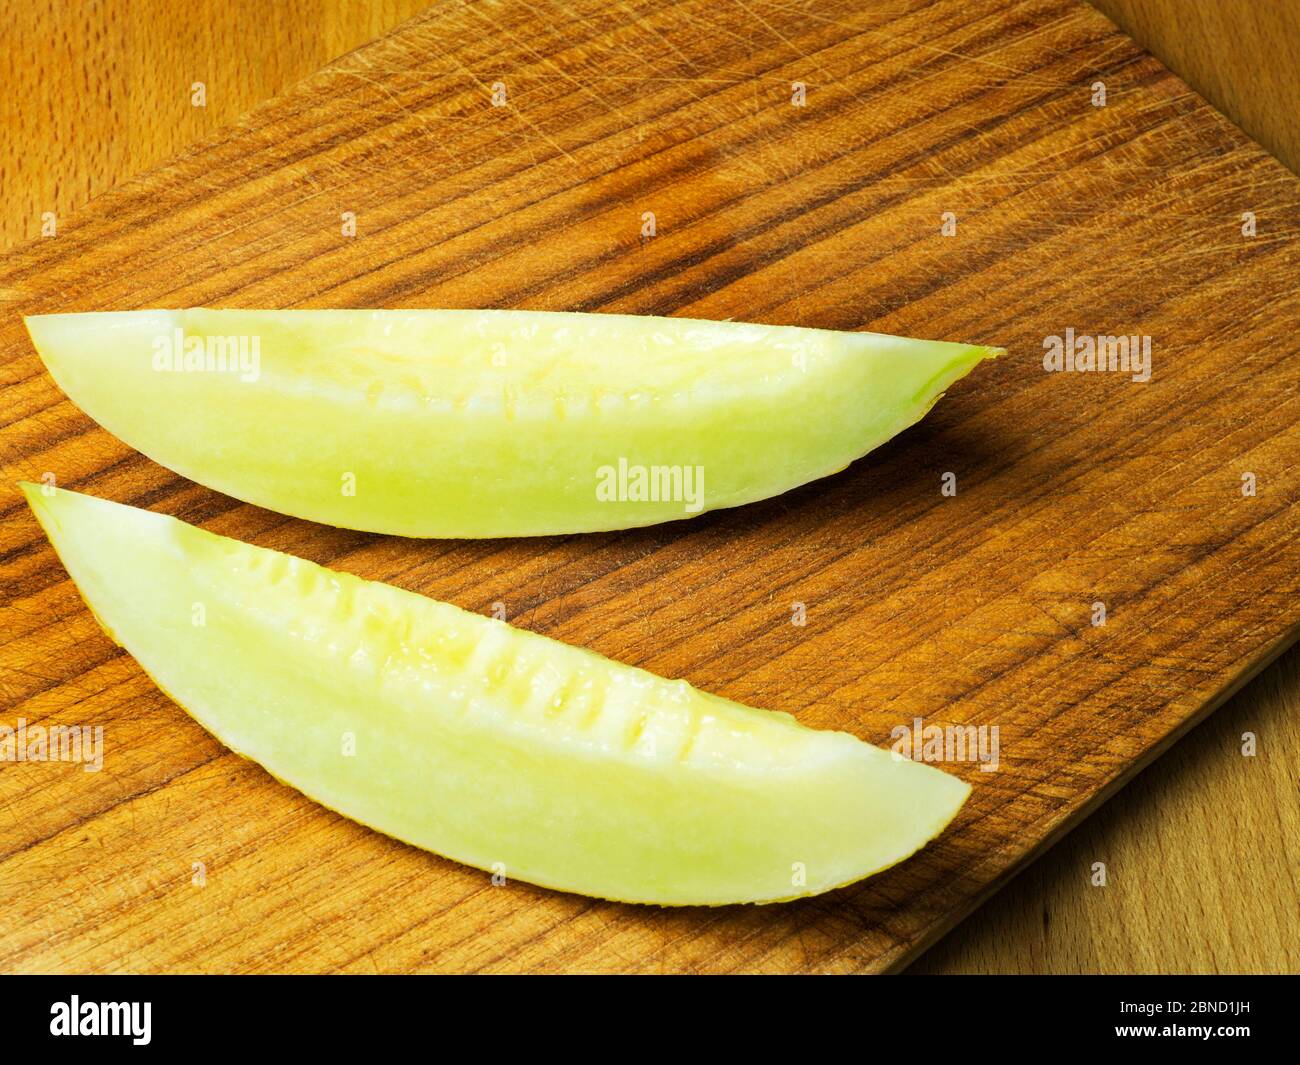 Due fette di melone canarino su una tagliere di legno Foto Stock